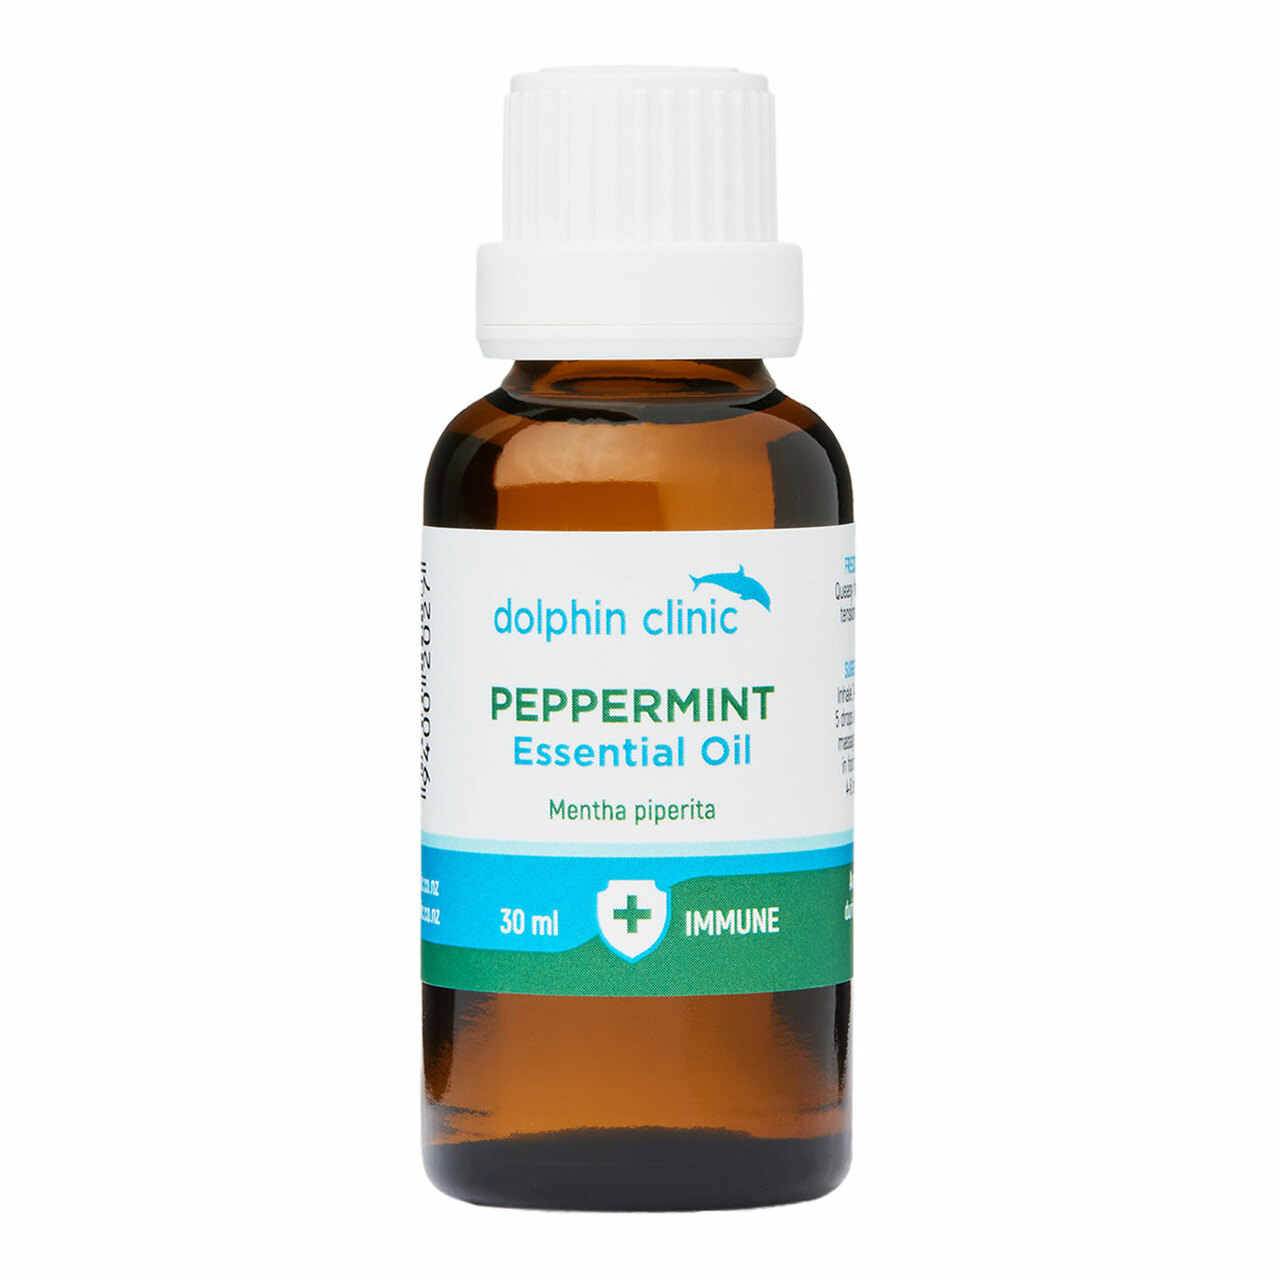 Dolphin Clinic Peppermint Oil 30ml